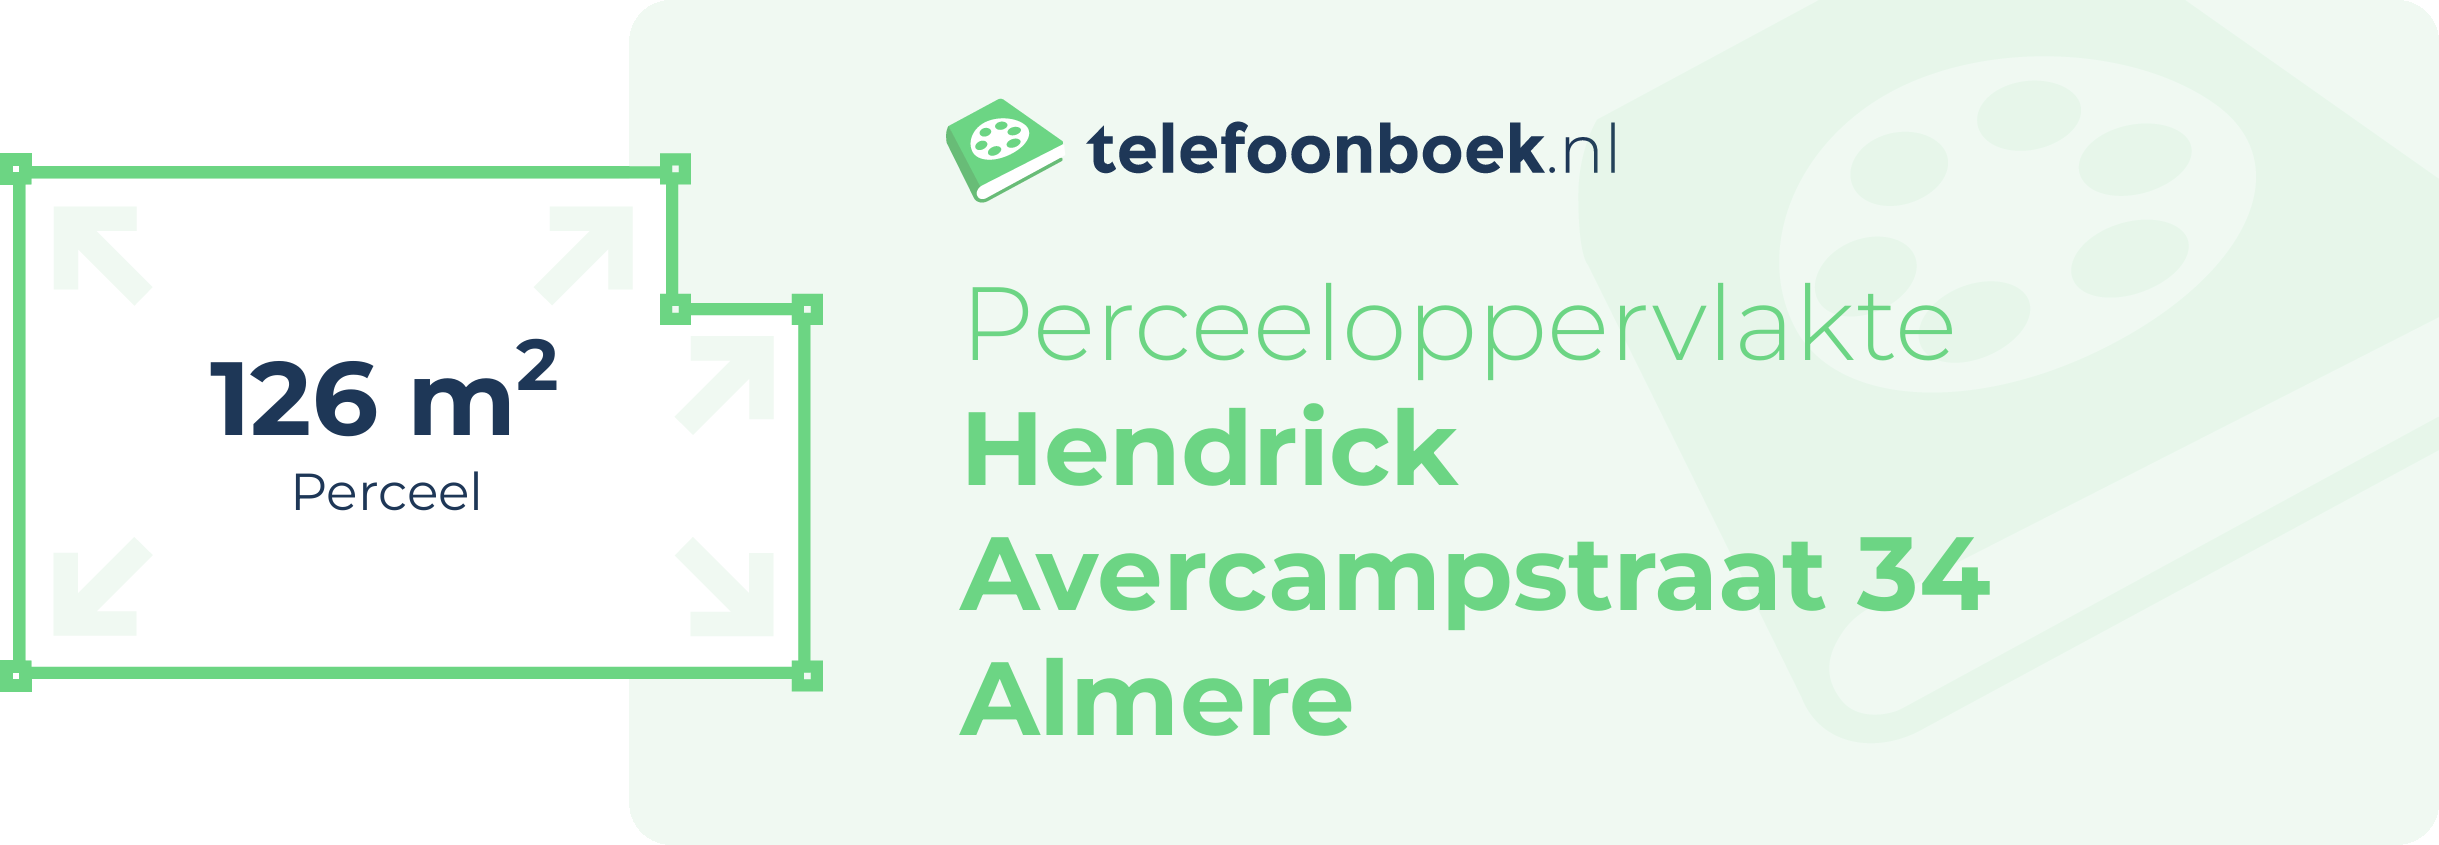 Perceeloppervlakte Hendrick Avercampstraat 34 Almere